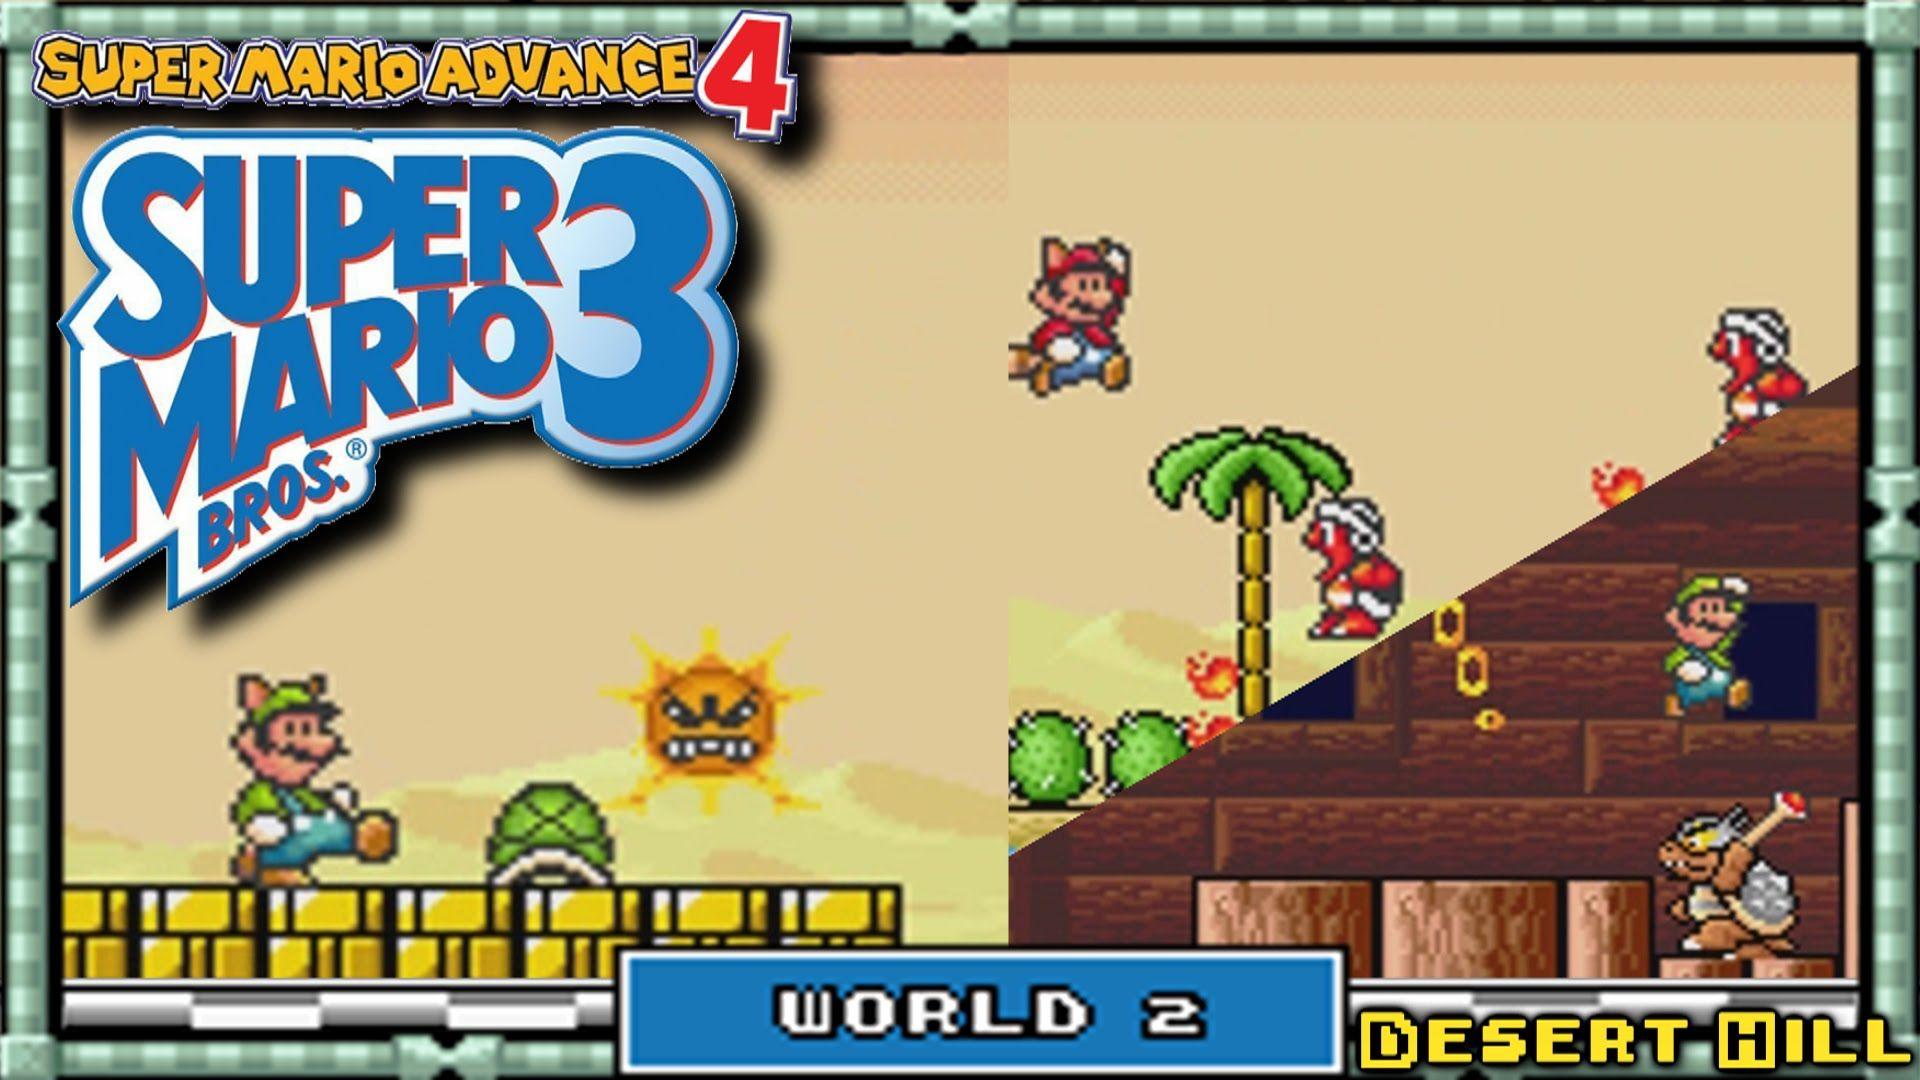 Mario world 4. Super Mario World: super Mario Bros. 4. Марио БРОС 3. Супер Марио адванс 3 супер Марио 3. Супер Марио адванс 4.